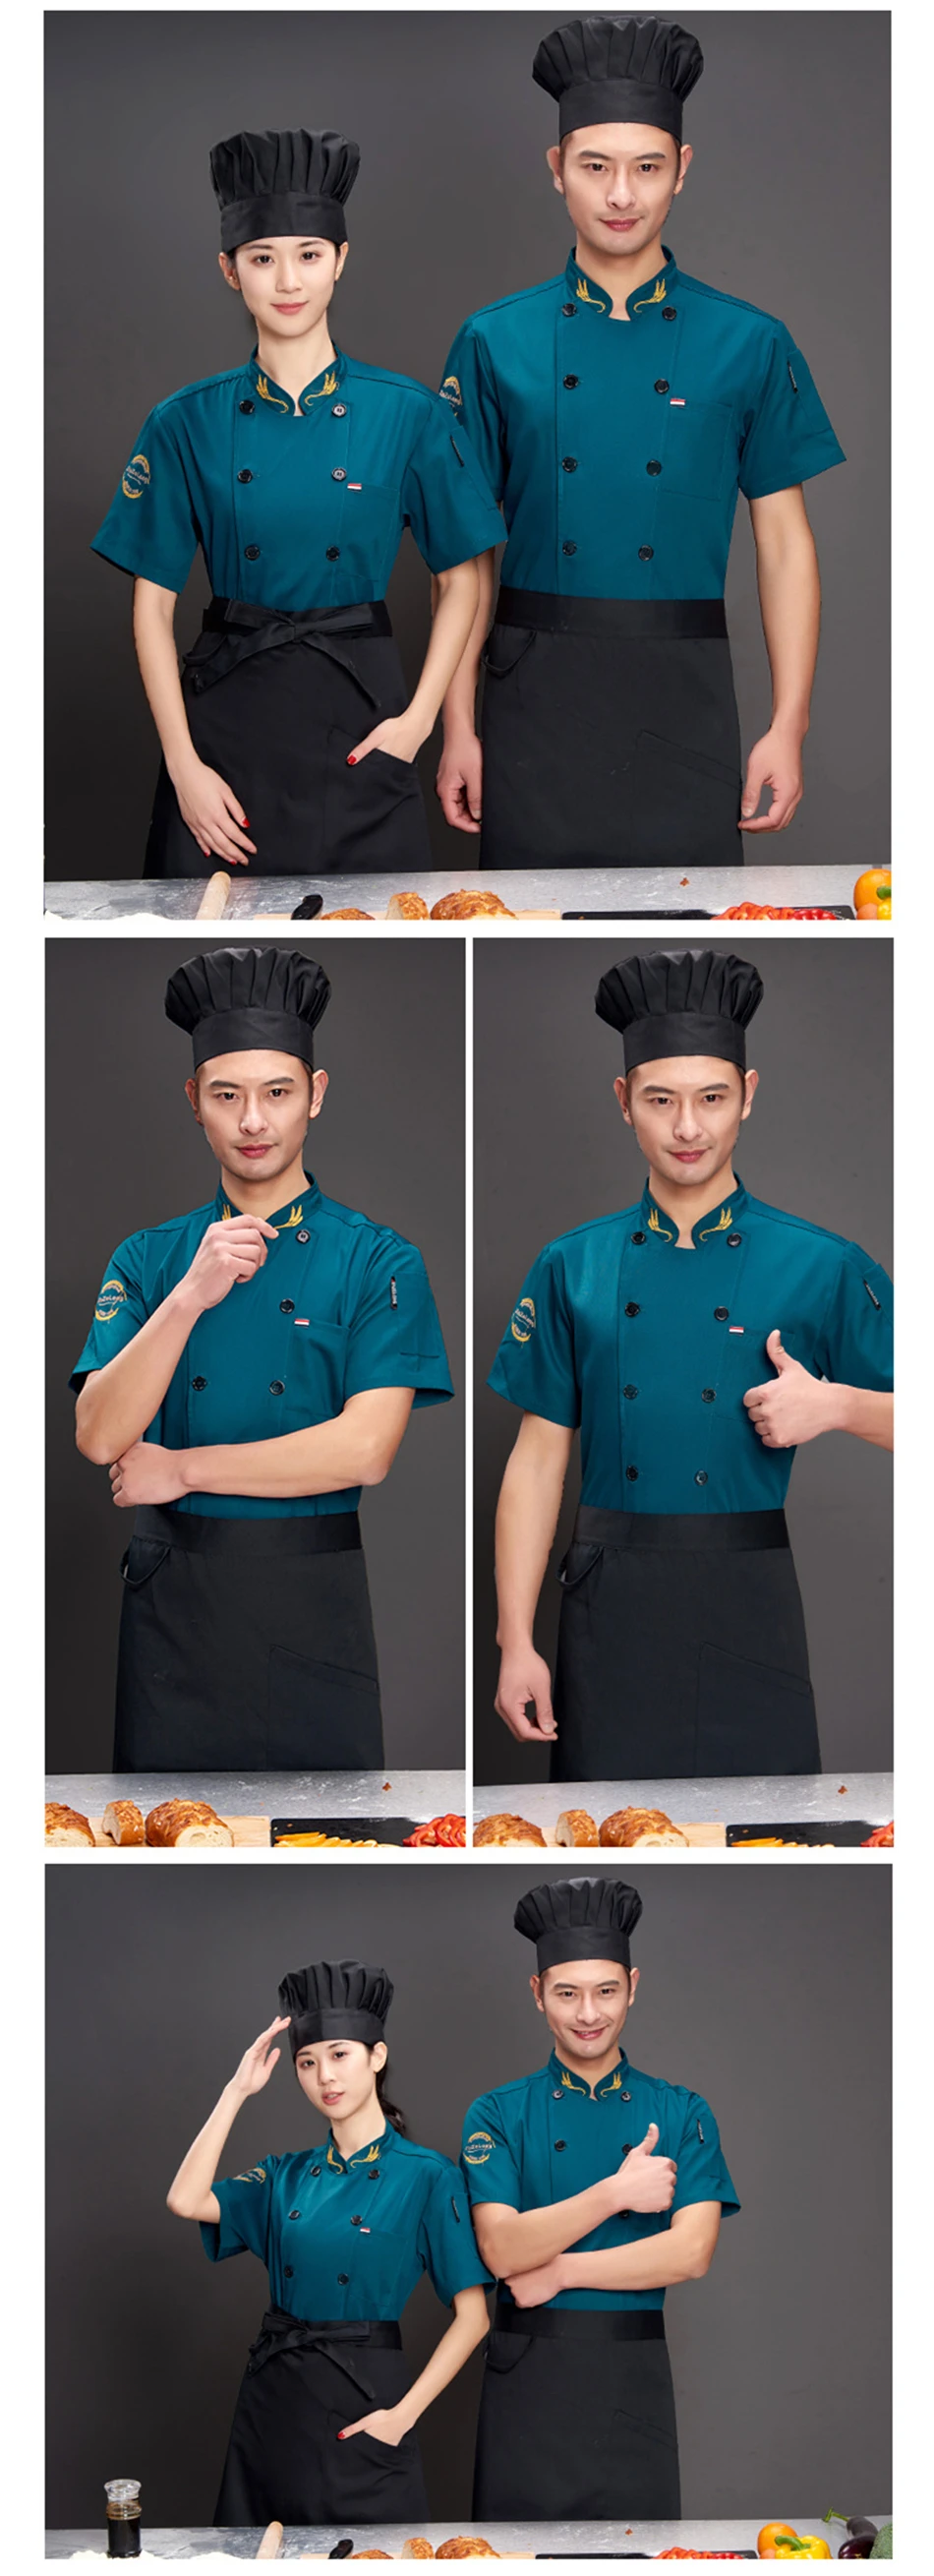 Взрослый шеф-повара униформа для мужчин рабочая одежда кухонные столешницы принт ресторанные рубашки летняя с коротким рукавом китайская